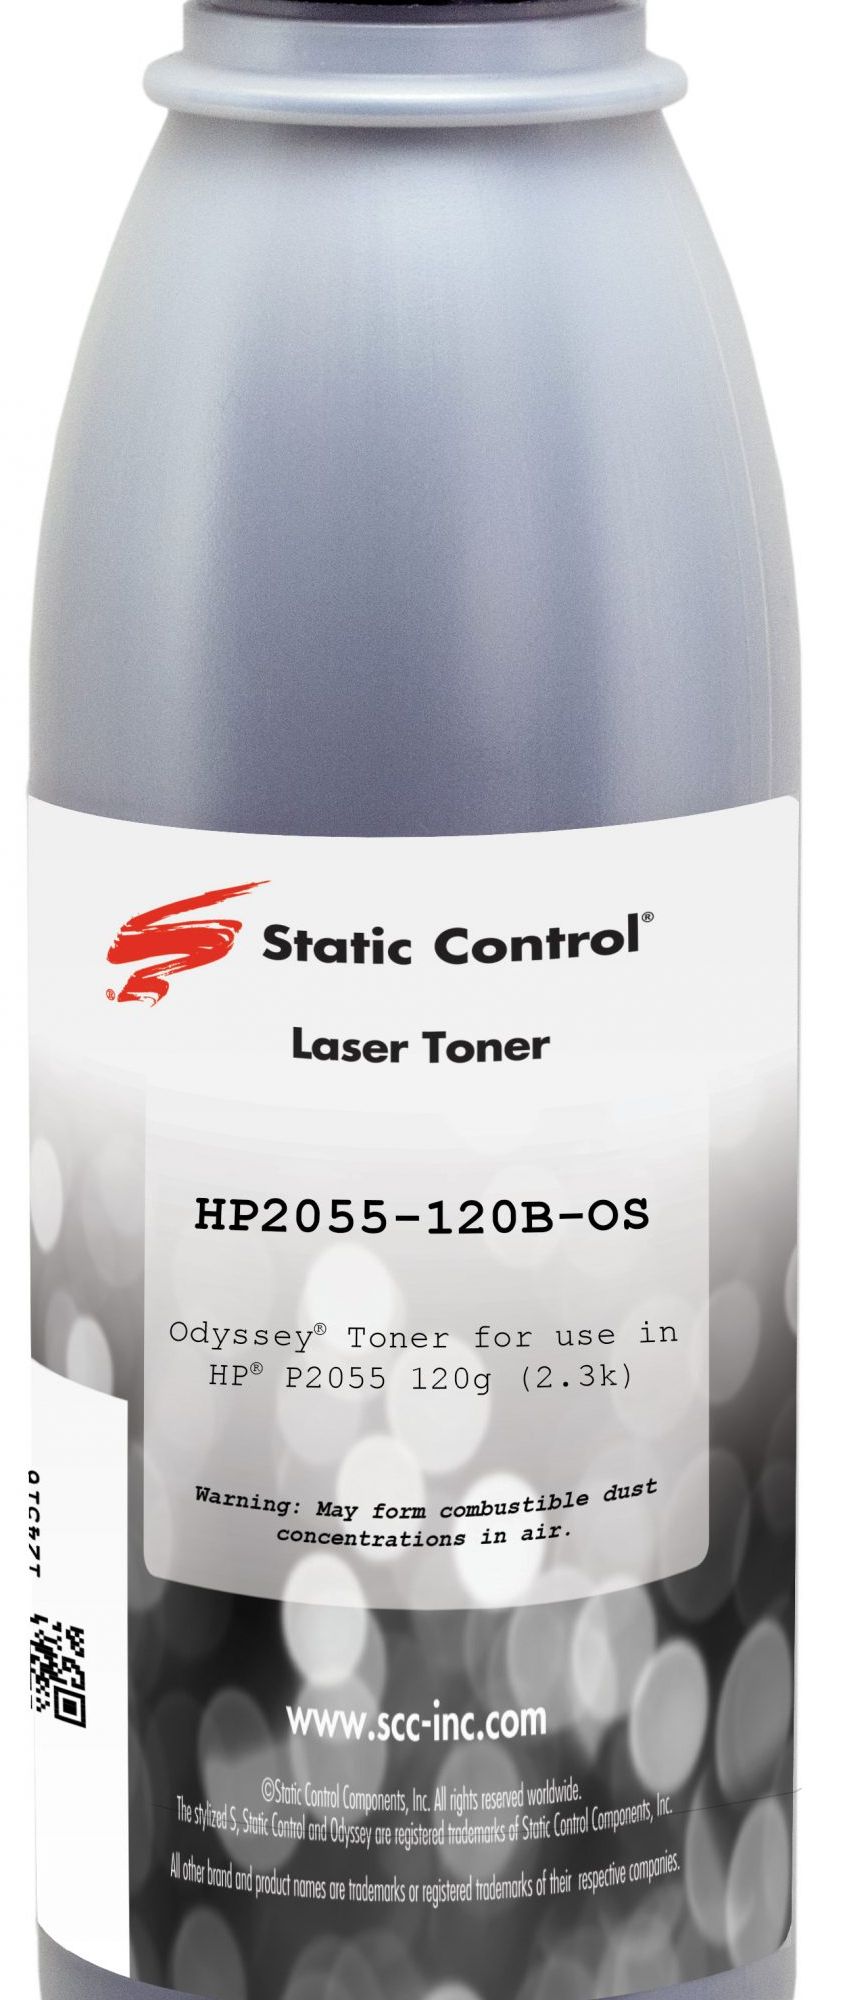 Тонер Static Control HP2055-120B-OS для HP (фл. 120г) цена и фото